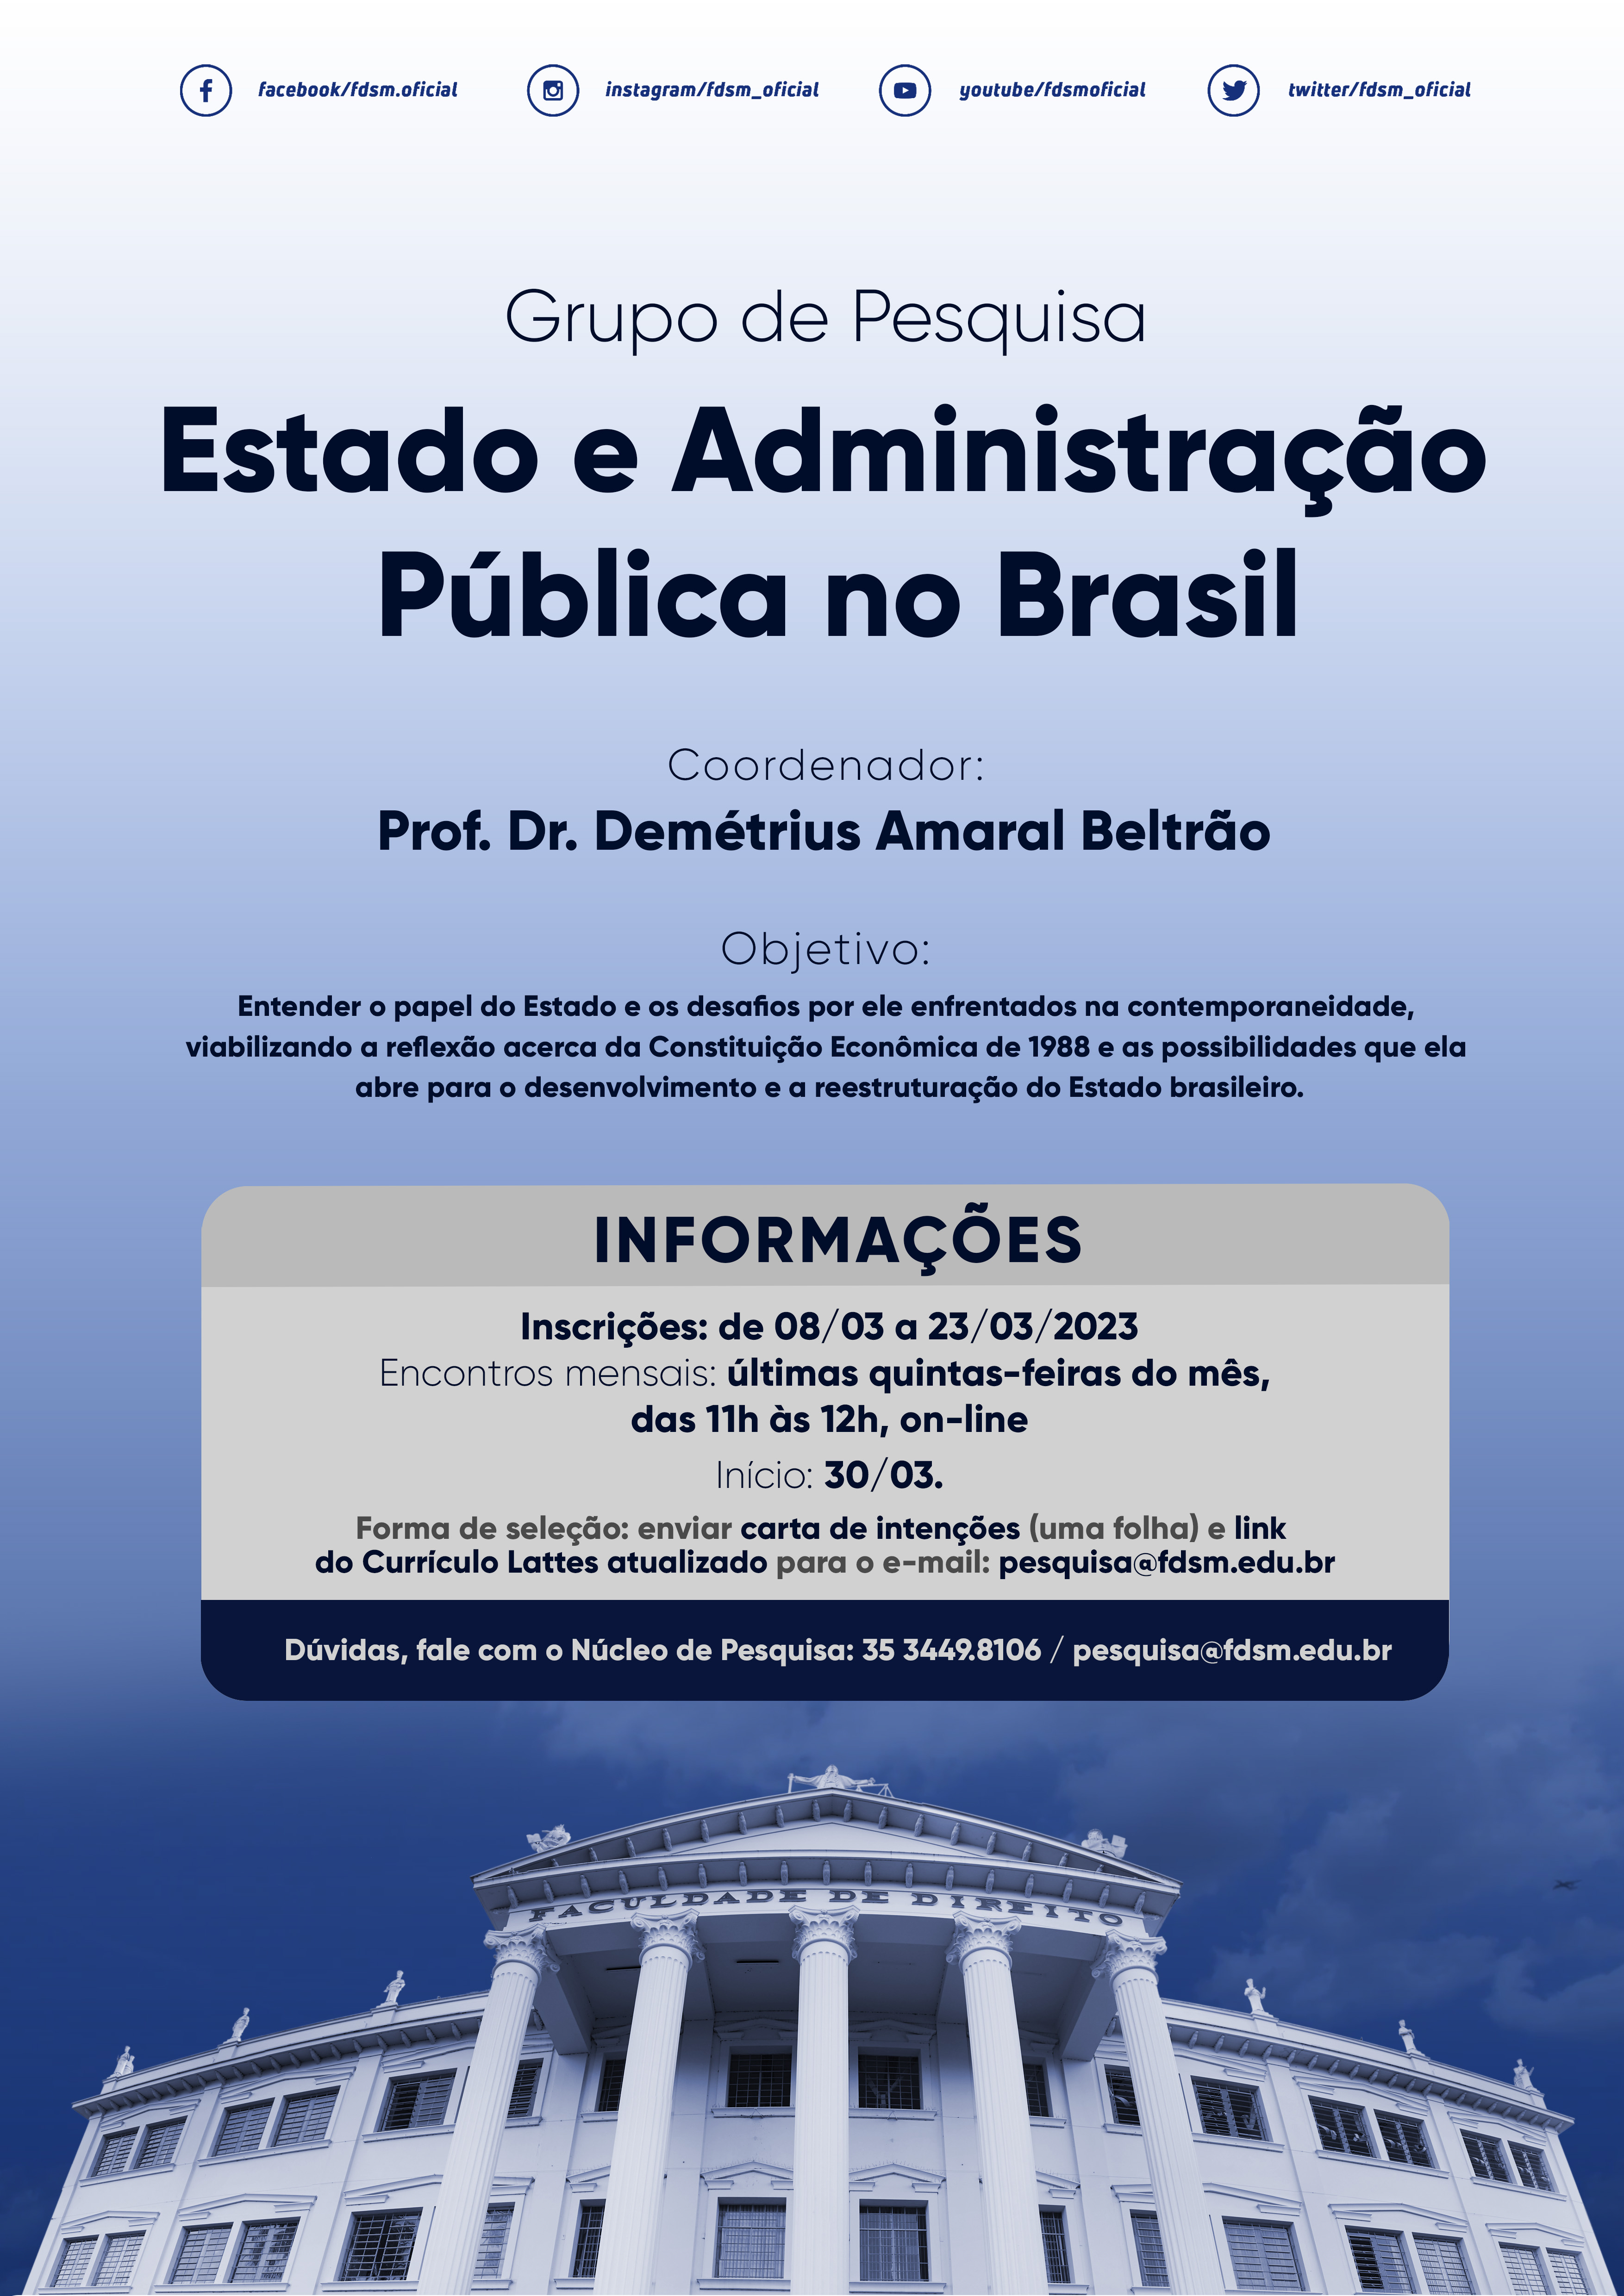 Evento 972 - GRUPO DE PESQUISA ESTADO E ADMINISTRAÇÃO PÚBLICA NO BRASIL